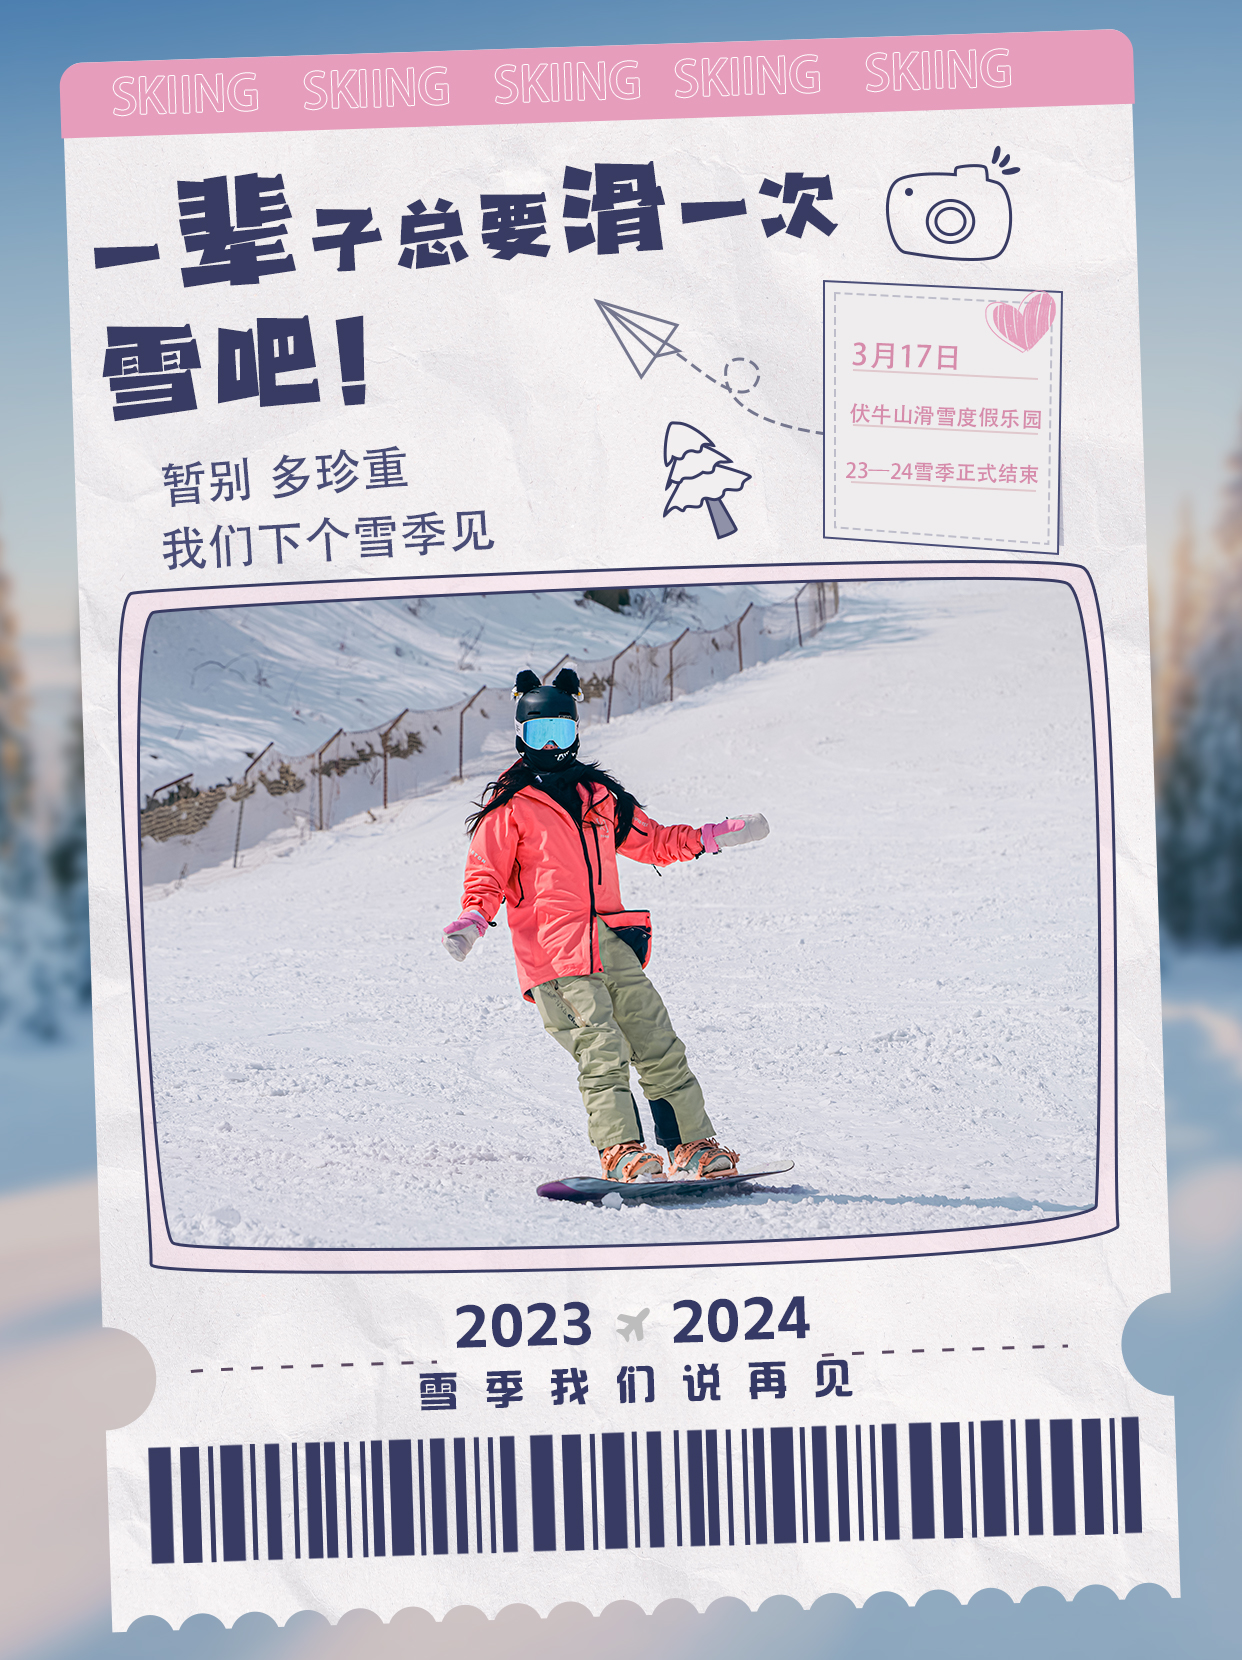 2023至2024雪季完美收官，精彩滑雪仍在继续～